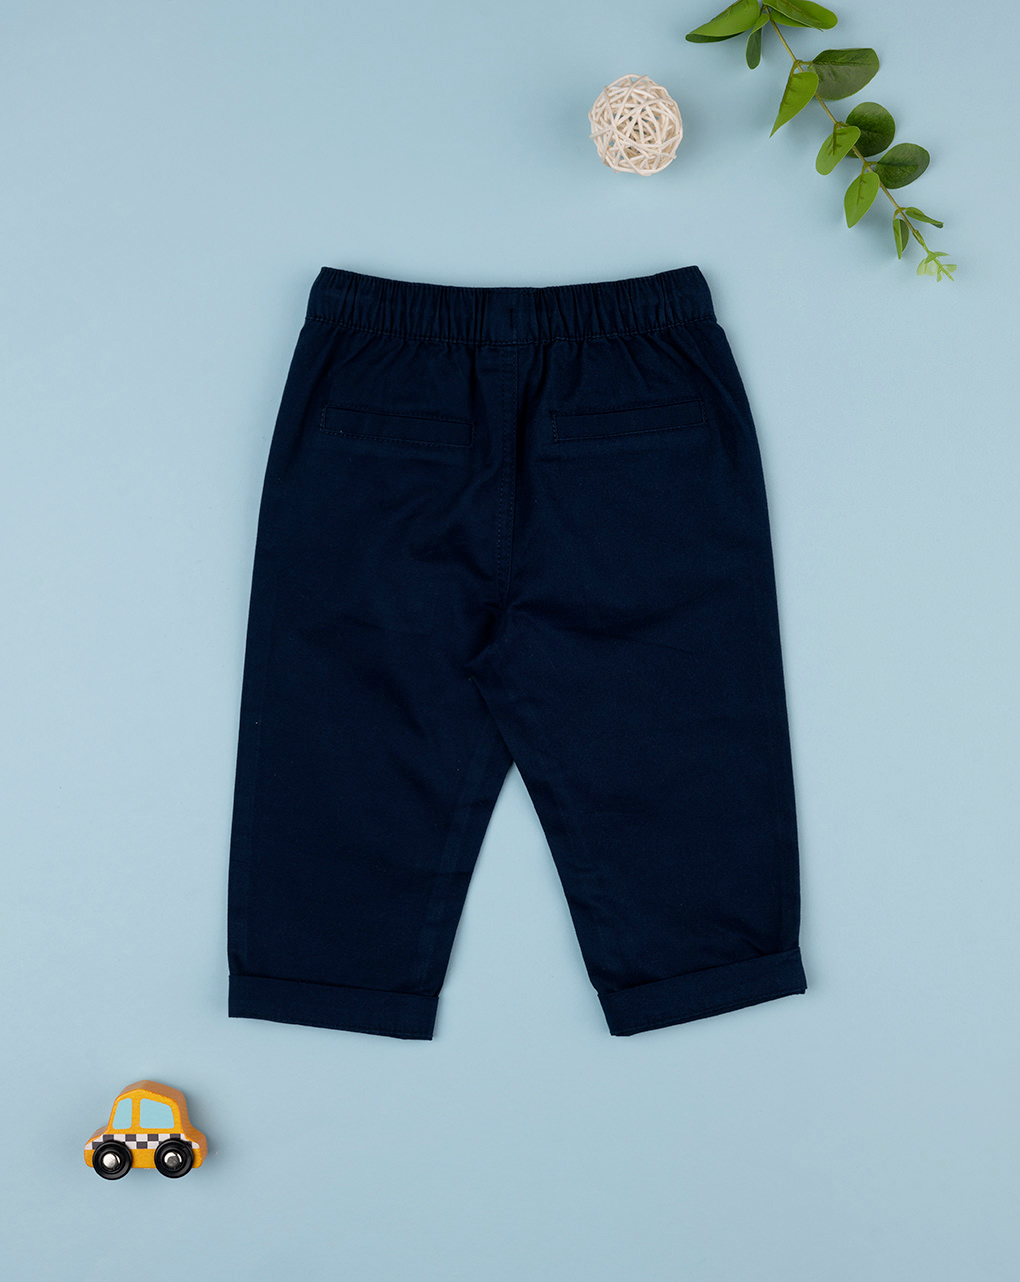 βρεφικό παντελόνι twill μπλε σκούρο για αγόρι - Prénatal